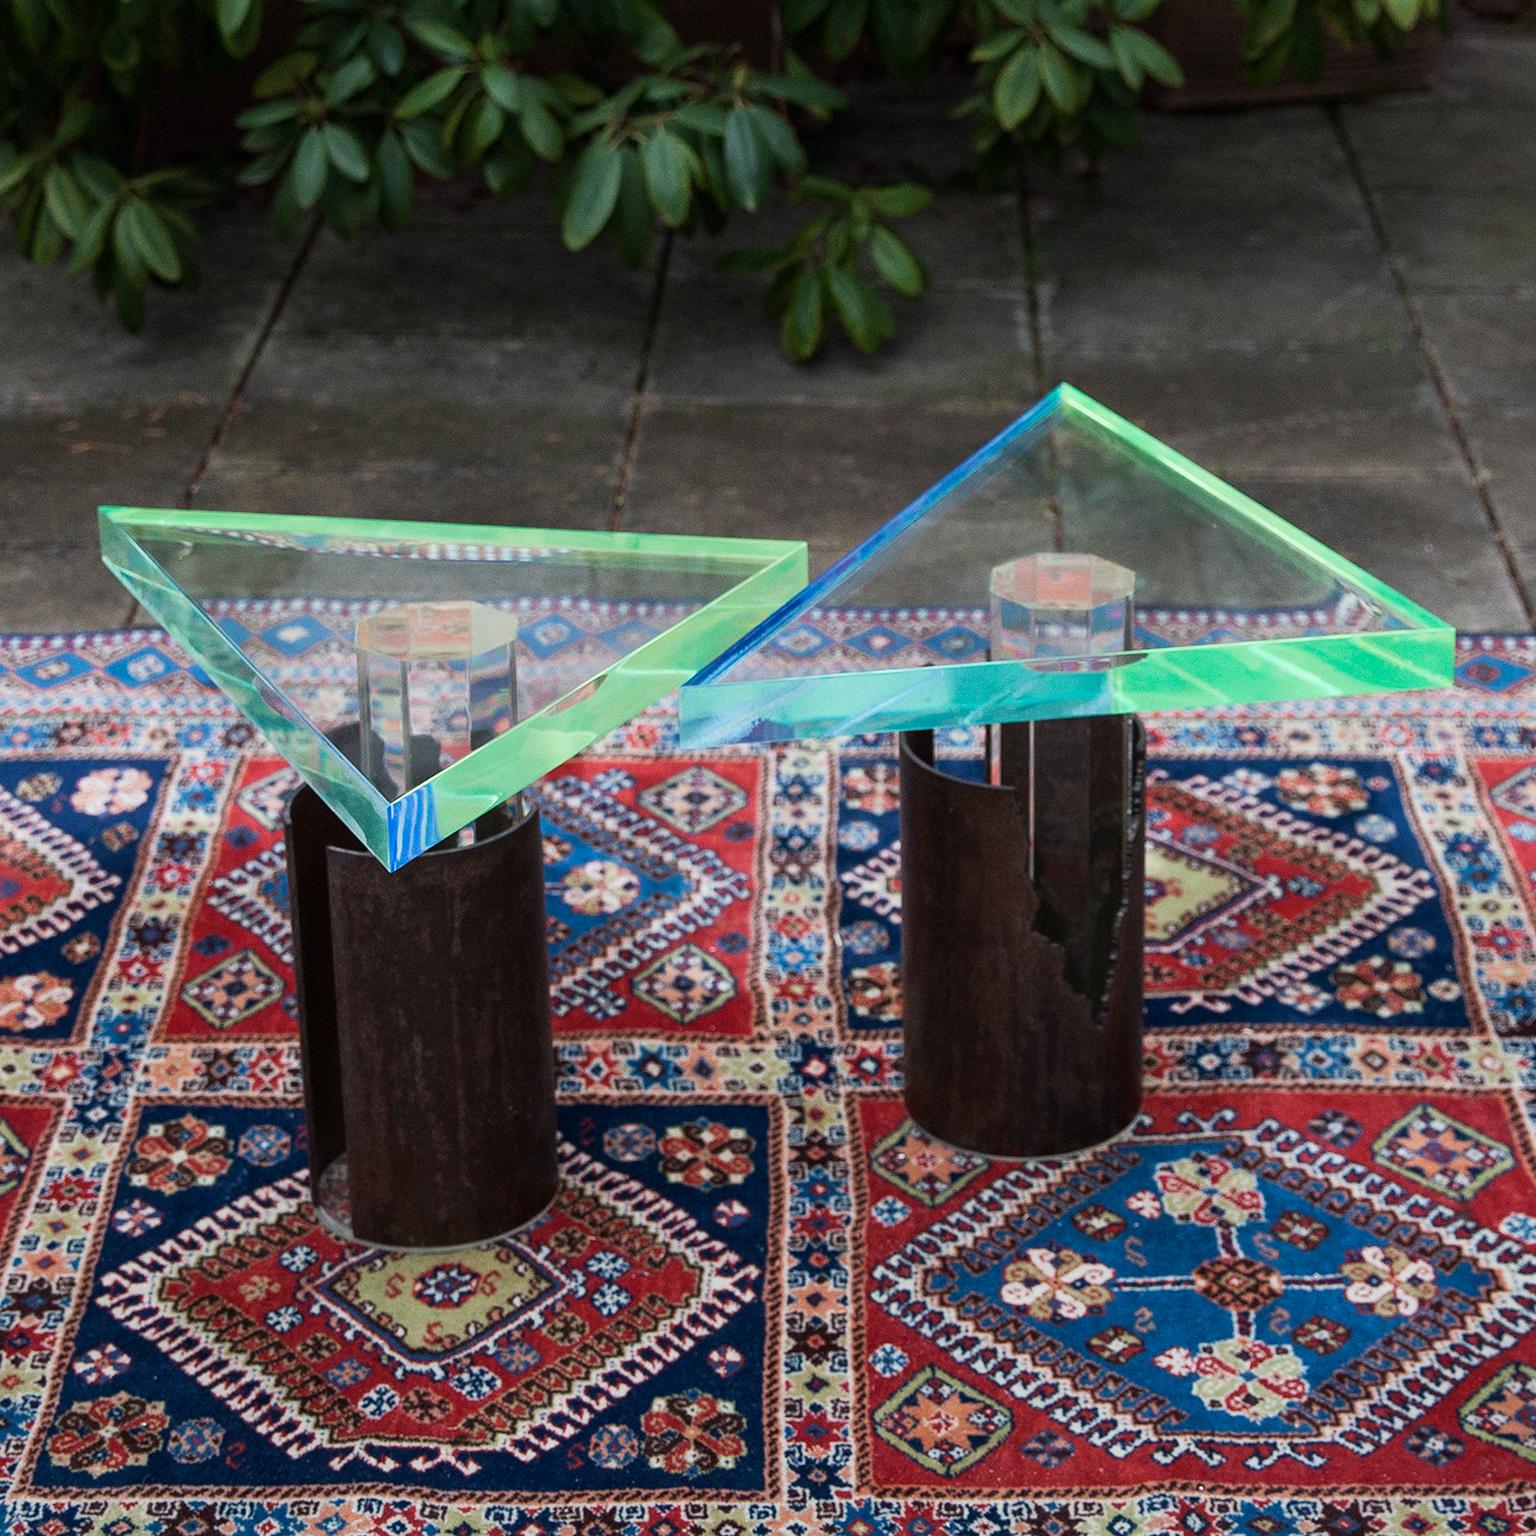 Spectaculaire paire de tables d'appoint brutalistes en acrylique et bronze.
La base hexagonale en acrylique transparent est encadrée d'un bronze brutaliste rond et le sommet à trois angles est coloré en acrylique bleu et vert.
Une véritable